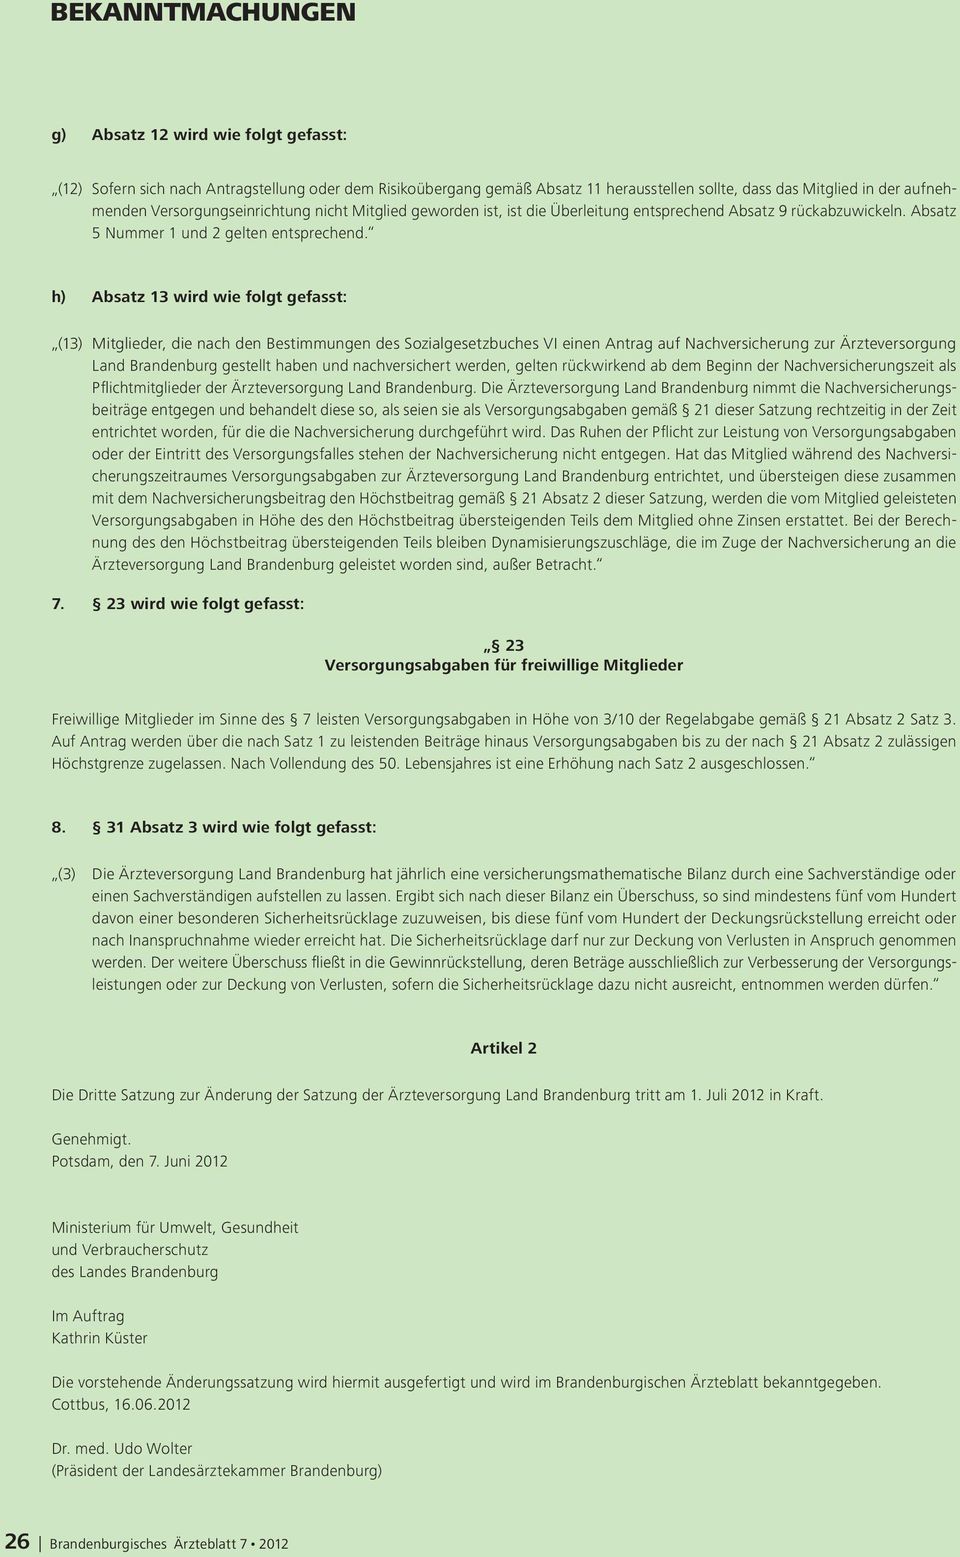 h) Absatz 13 wird wie folgt gefasst: (13) Mitglieder, die nach den Bestimmungen des Sozialgesetzbuches VI einen Antrag auf Nachversicherung zur Ärzteversorgung Land Brandenburg gestellt haben und